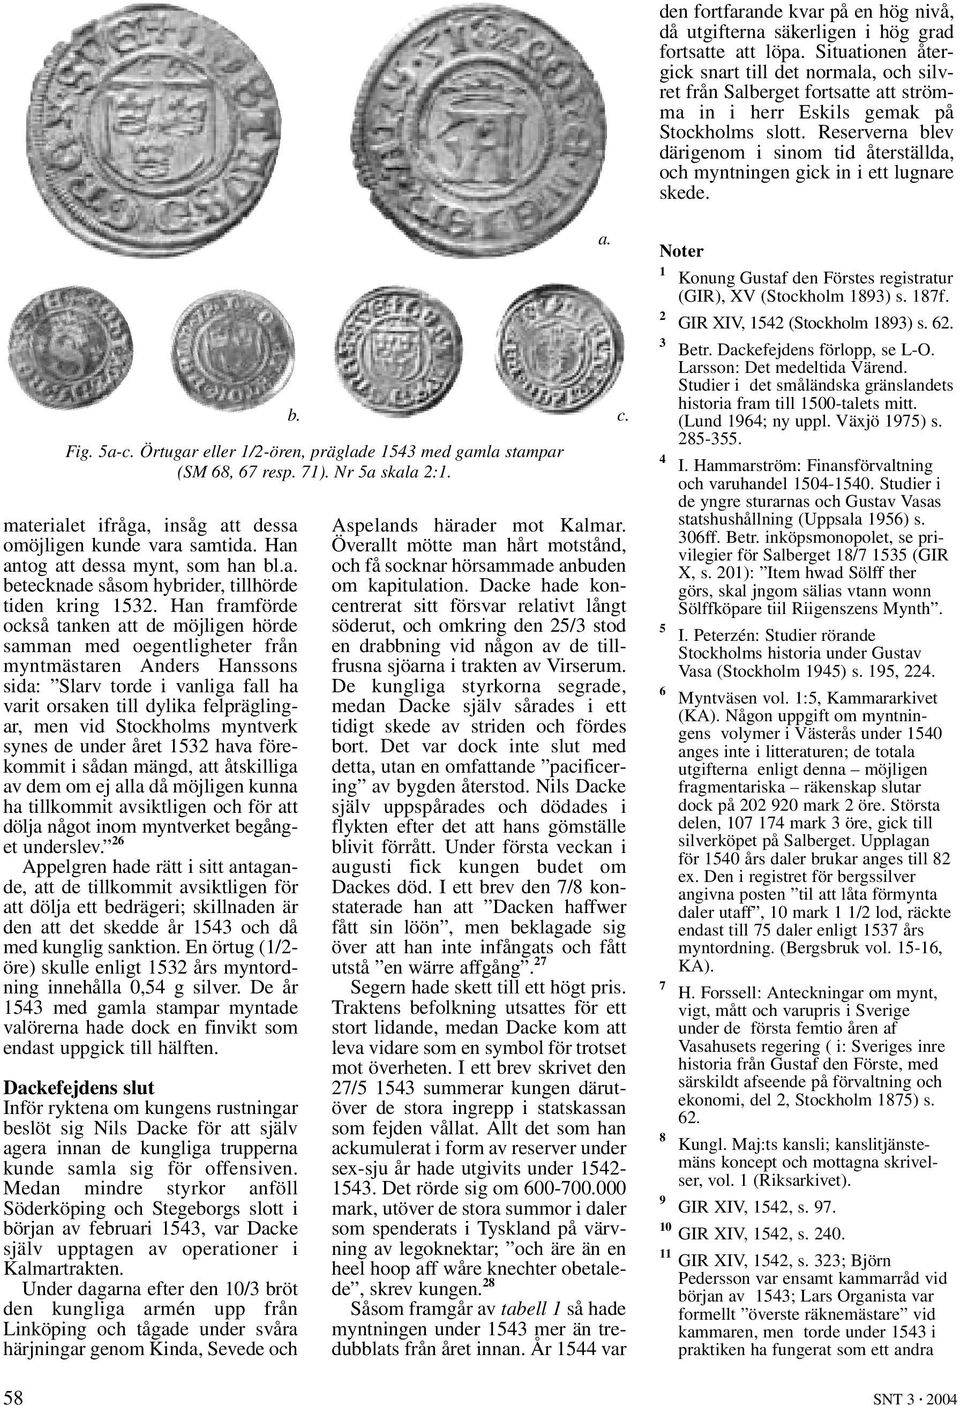 Reserverna blev därigenom i sinom tid återställda, och myntningen gick in i ett lugnare skede. materialet ifråga, insåg att dessa omöjligen kunde vara samtida. Han antog att dessa mynt, som han bl.a. betecknade såsom hybrider, tillhörde tiden kring 1532.